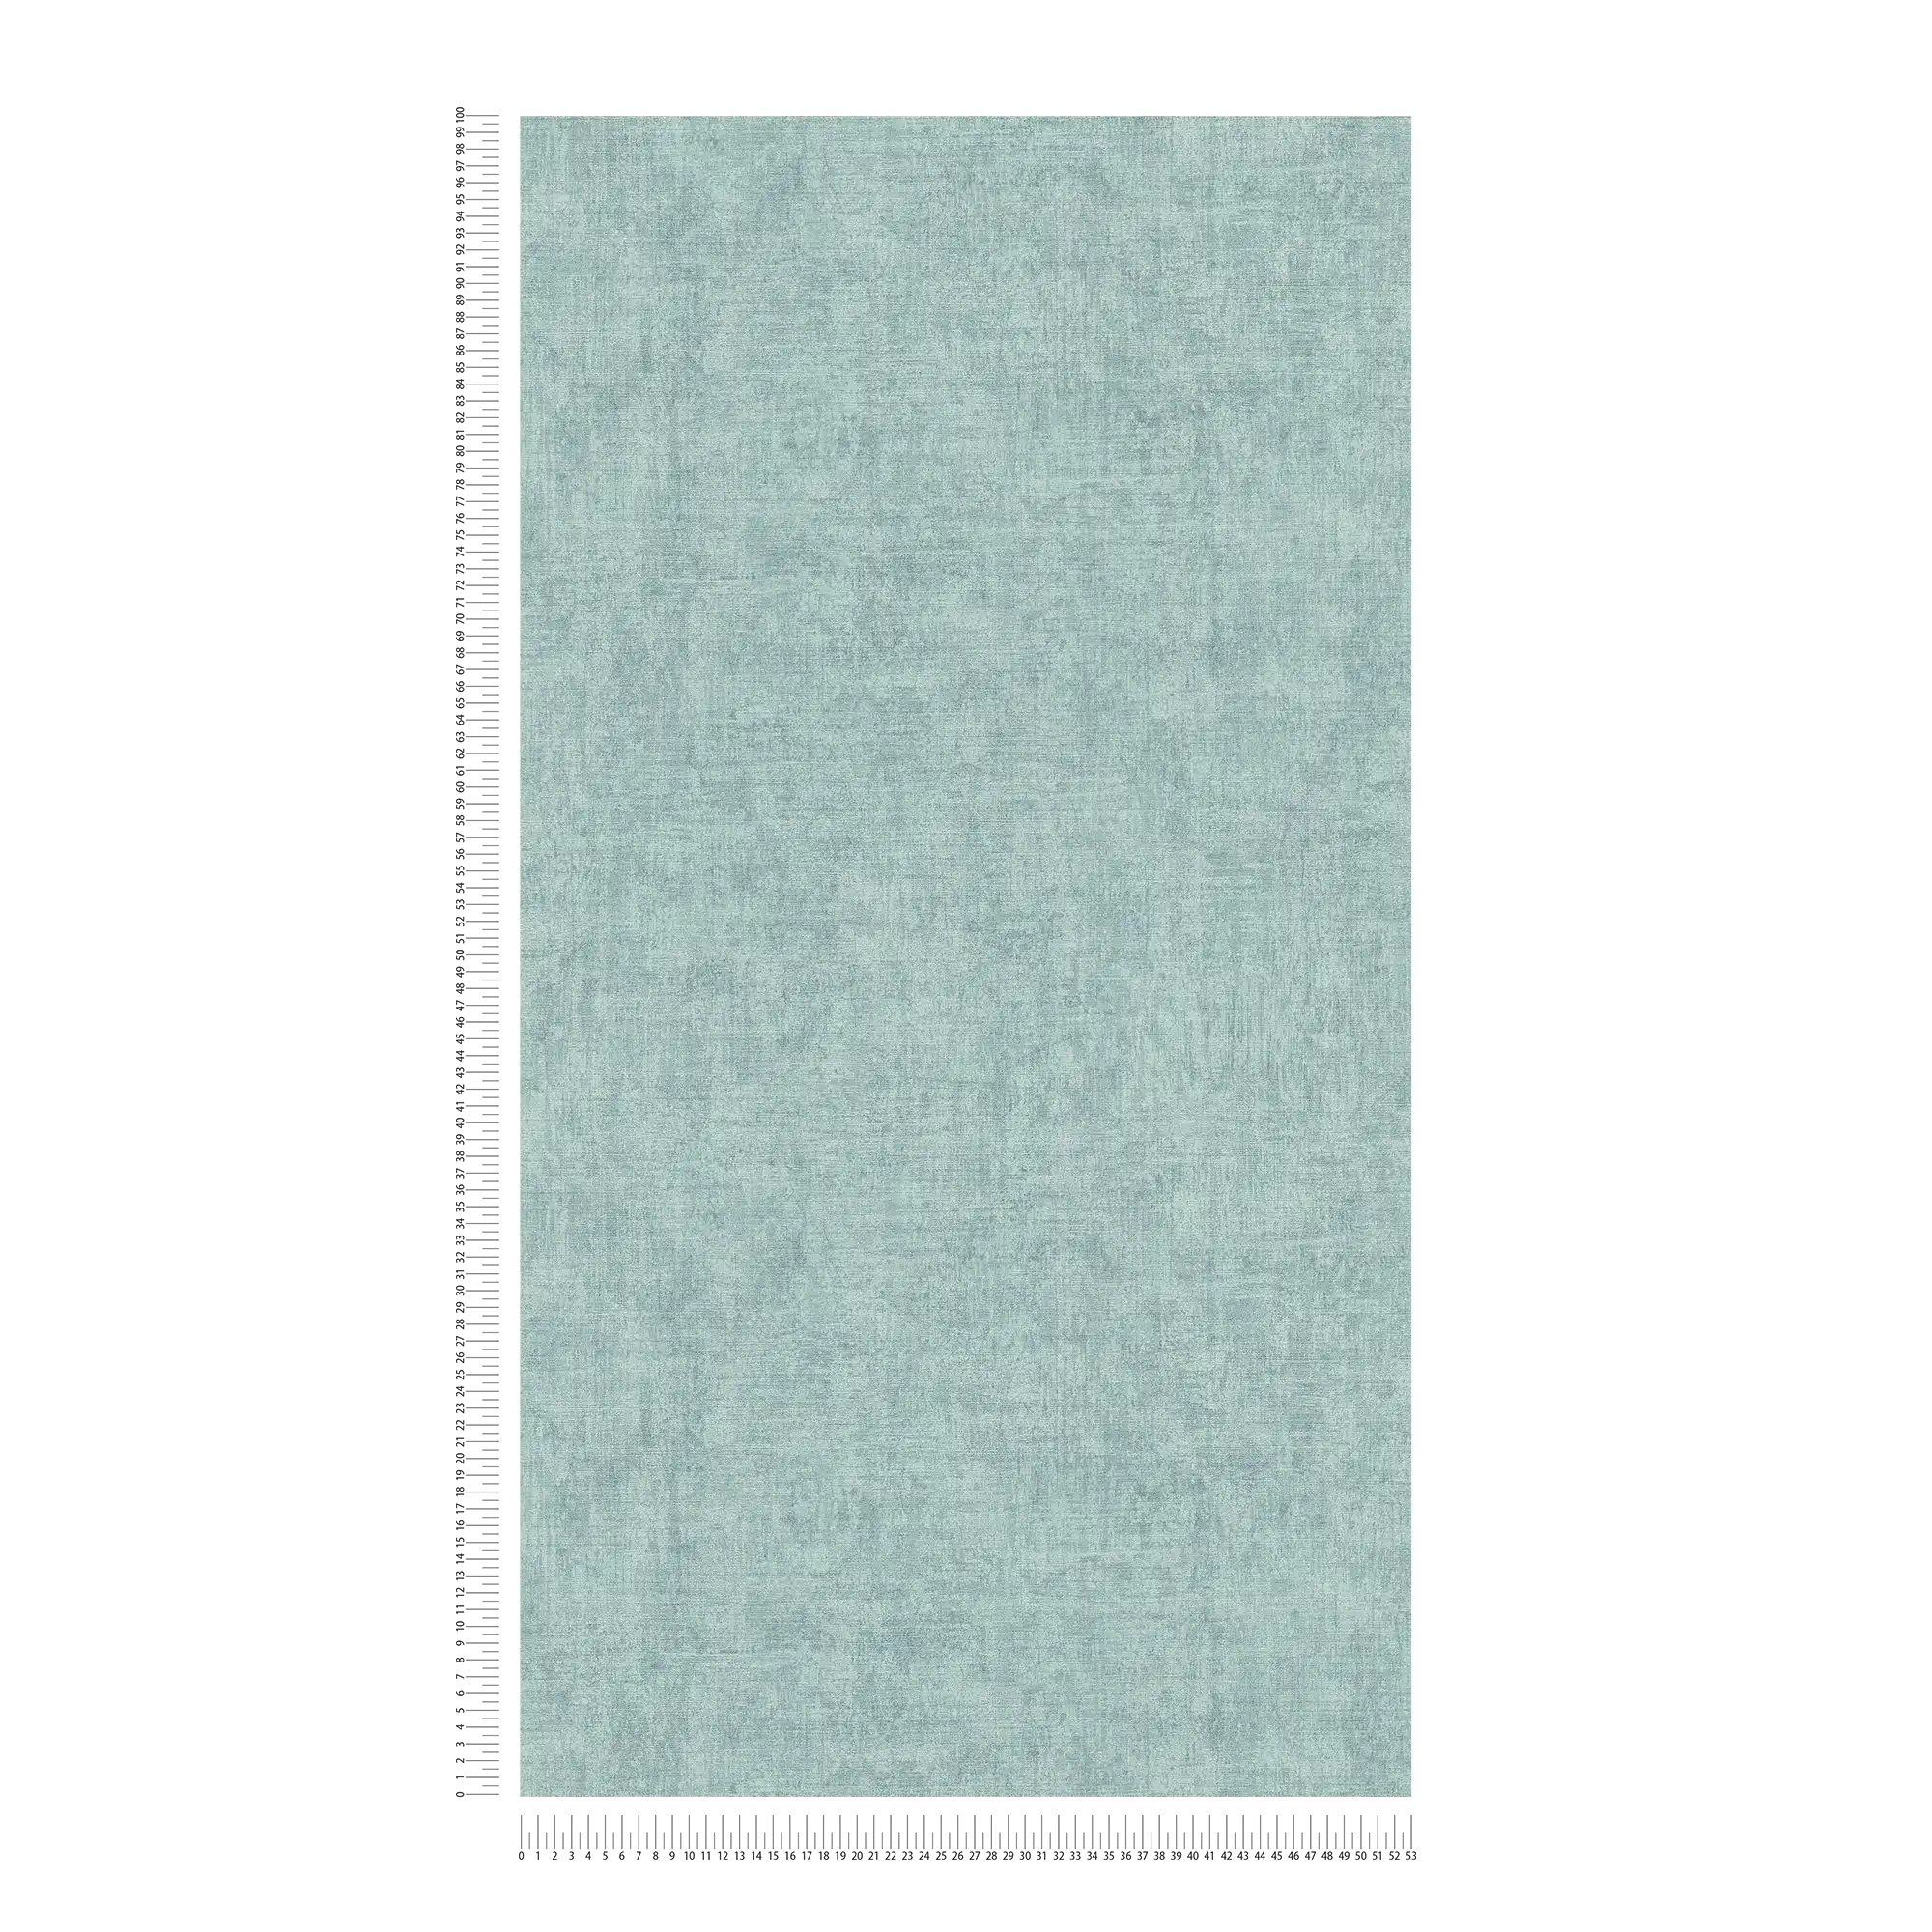             Papier peint intissé uni, chiné, motif structuré - bleu
        